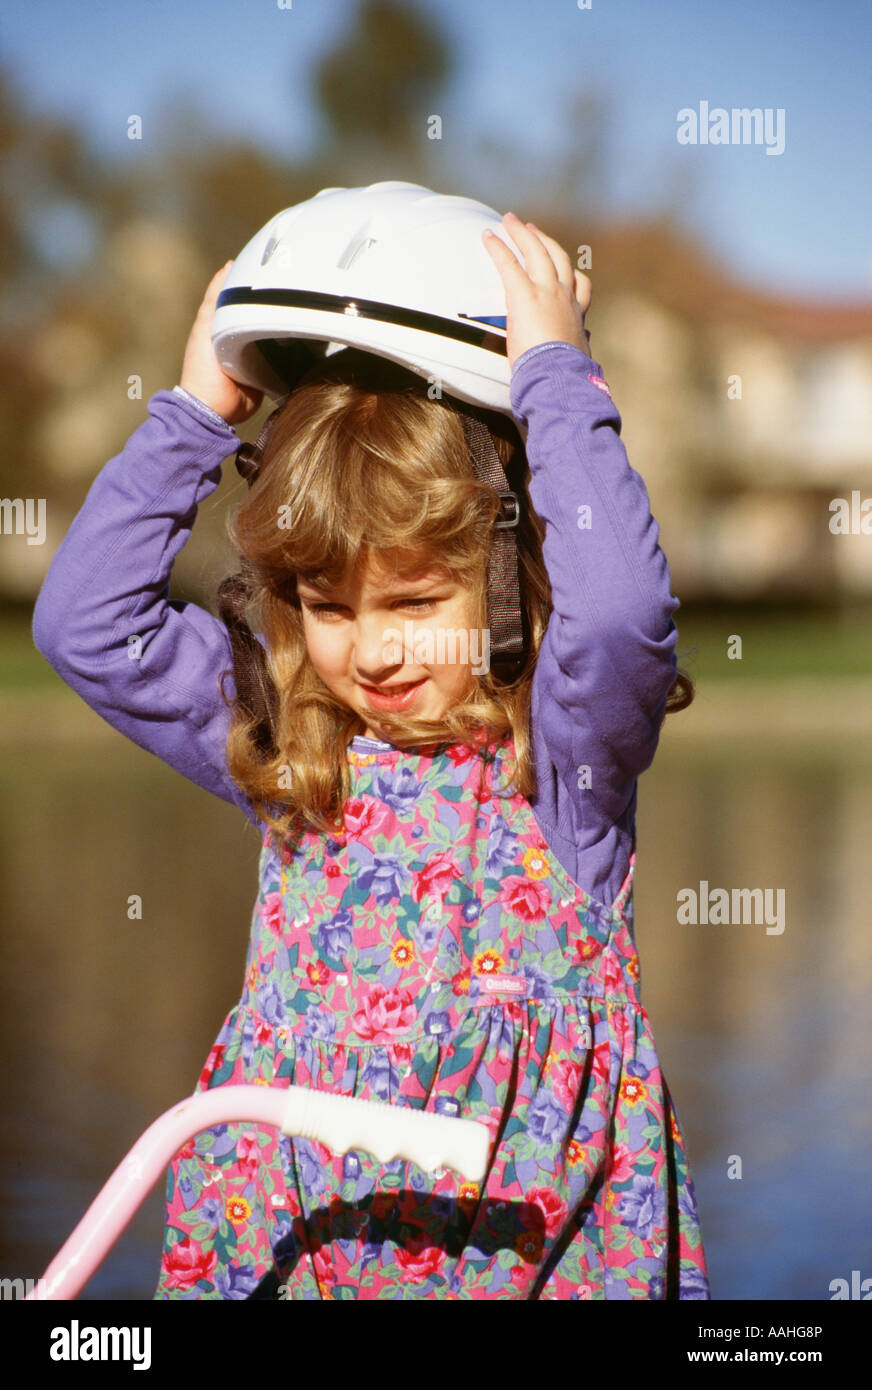 Junge Mädchen 4 -6 Jahre alten Holding putting Fahrrad Helm auf dem Kopf sitzen auf dem Fahrrad Aktivität US USA United States. Herr © Myrleen Pearson ....... Ferguson Cate Stockfoto